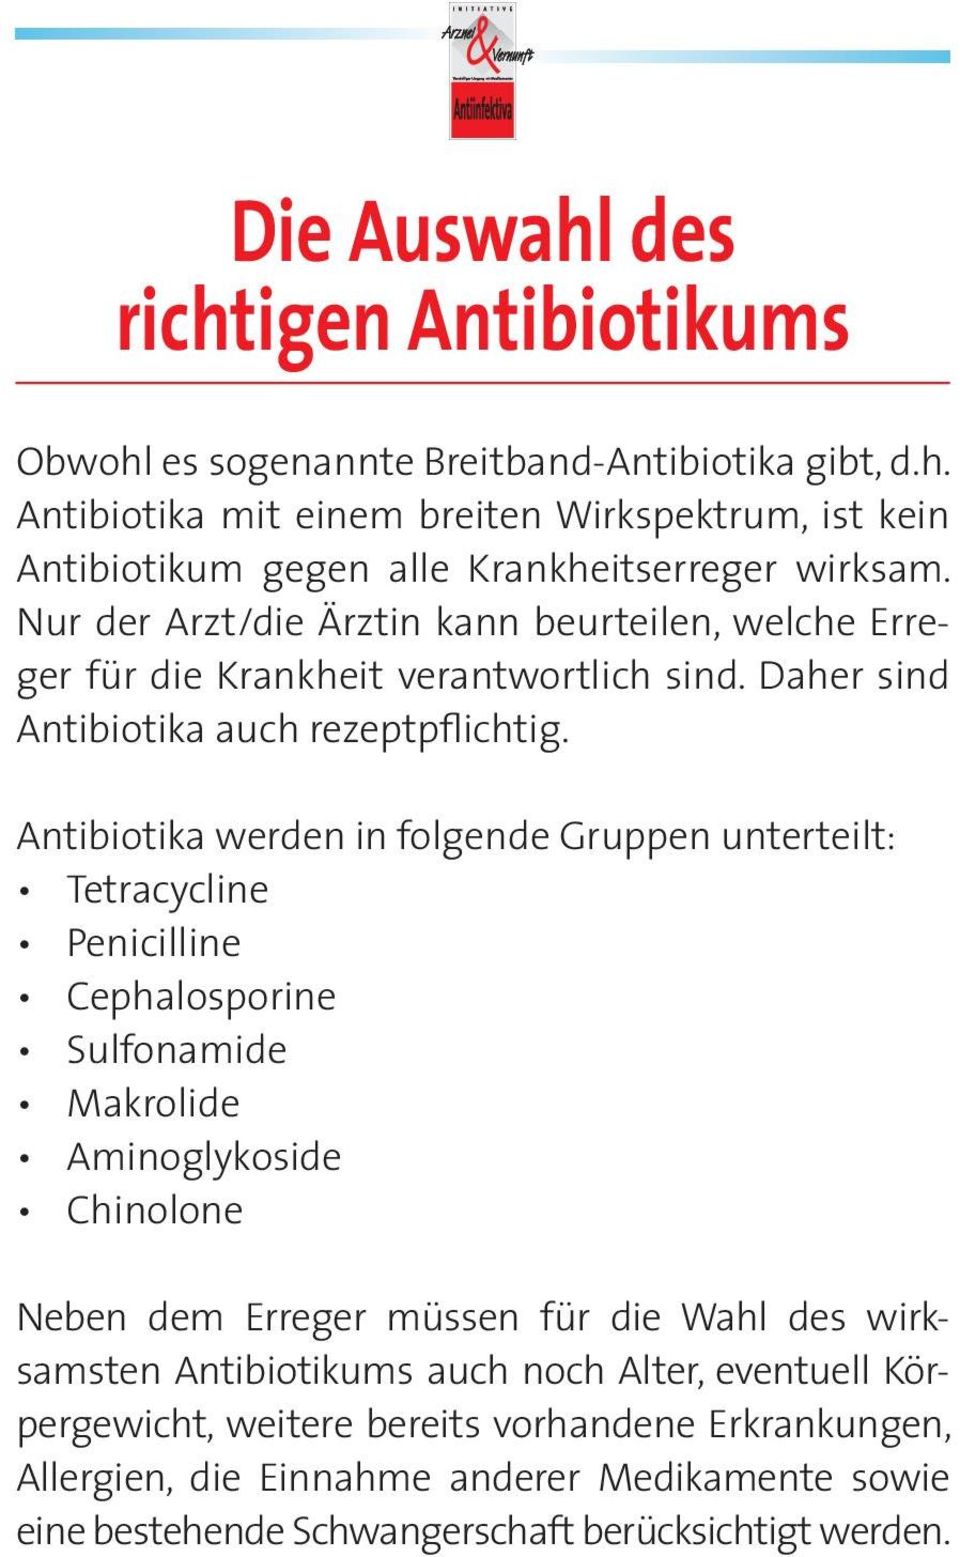 Antibiotika werden in folgende Gruppen unterteilt: Tetracycline Penicilline Cephalosporine Sulfonamide Makrolide Aminoglykoside Chinolone Neben dem Erreger müssen für die Wahl des